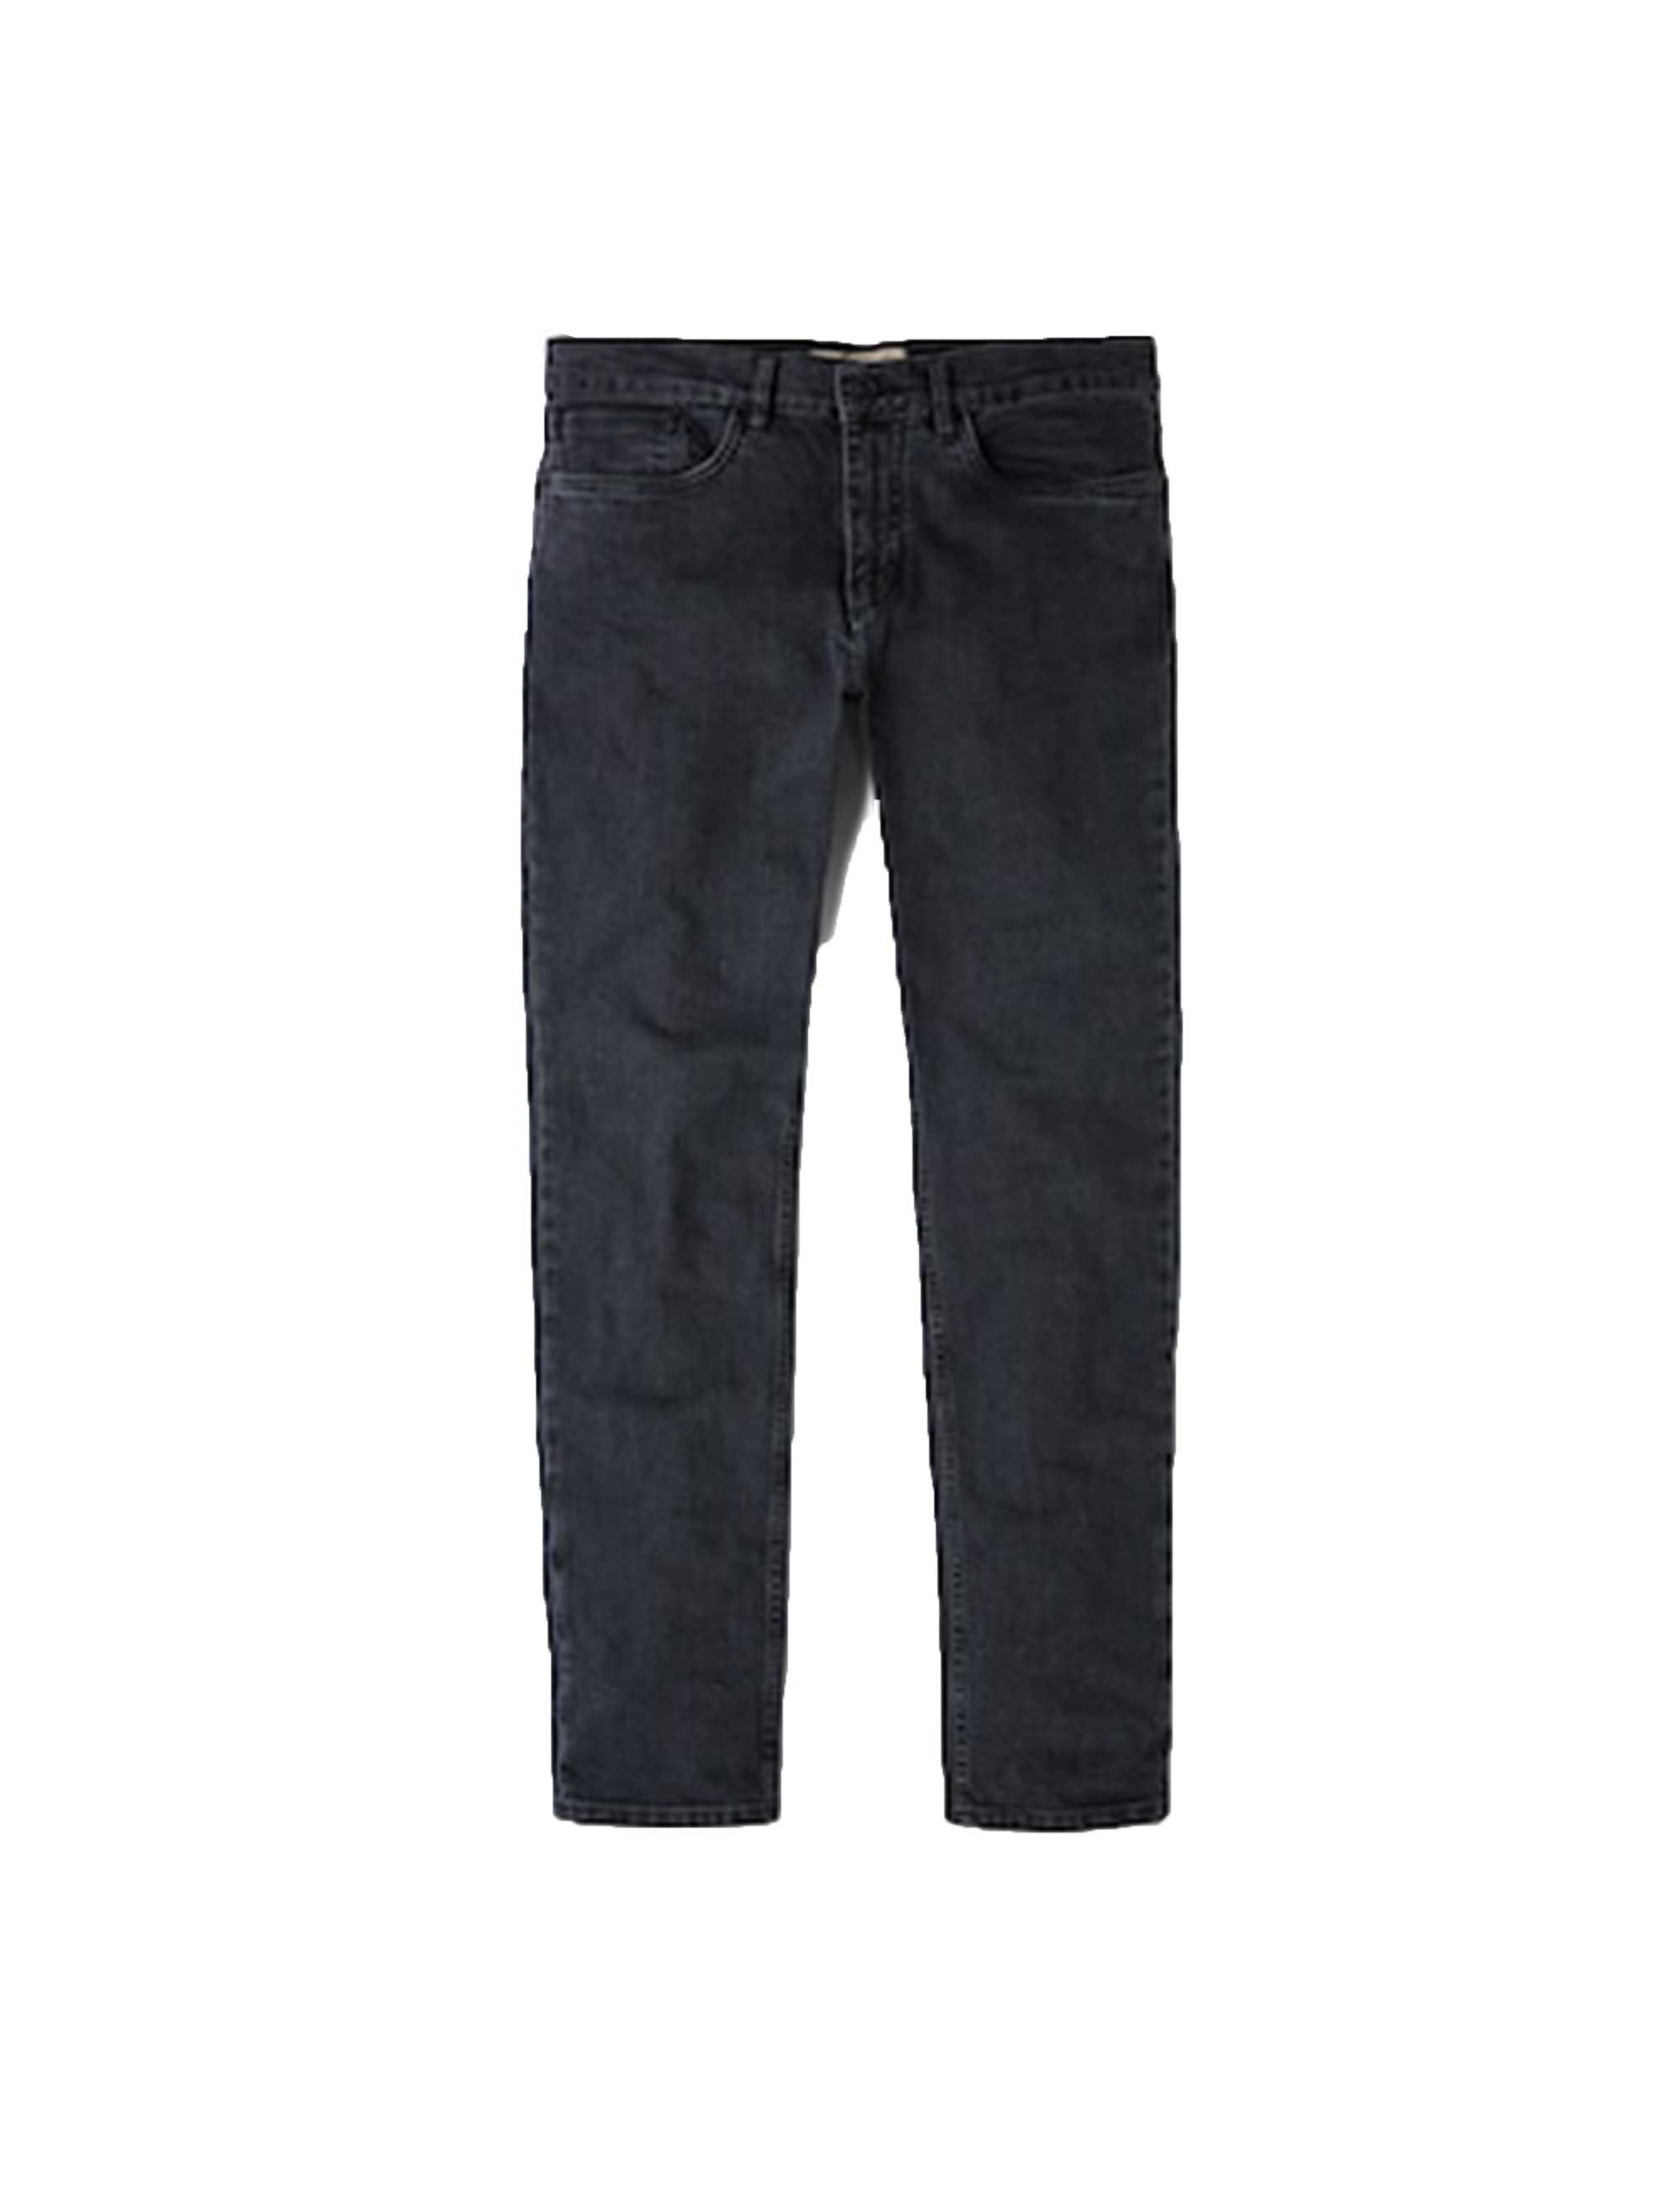 شلوار جین راسته مردانه - مانگو - زغالي  - 1